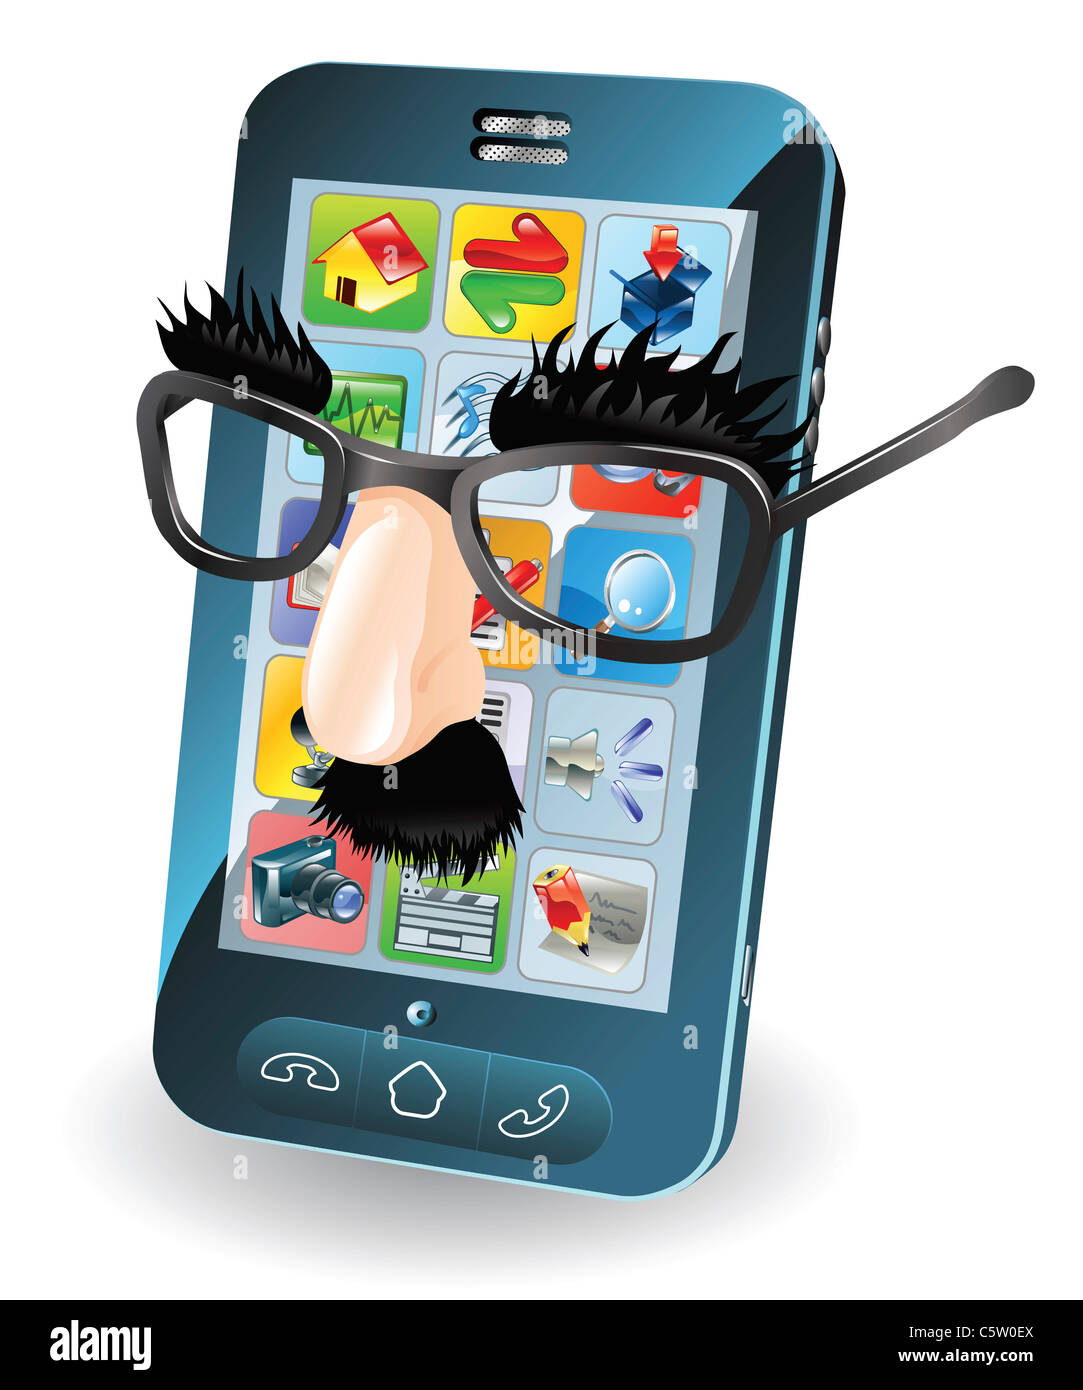 Handy mit Verkleidung auf Konzept für chipping Telefon oder Klonen Sims etc.. Stockfoto